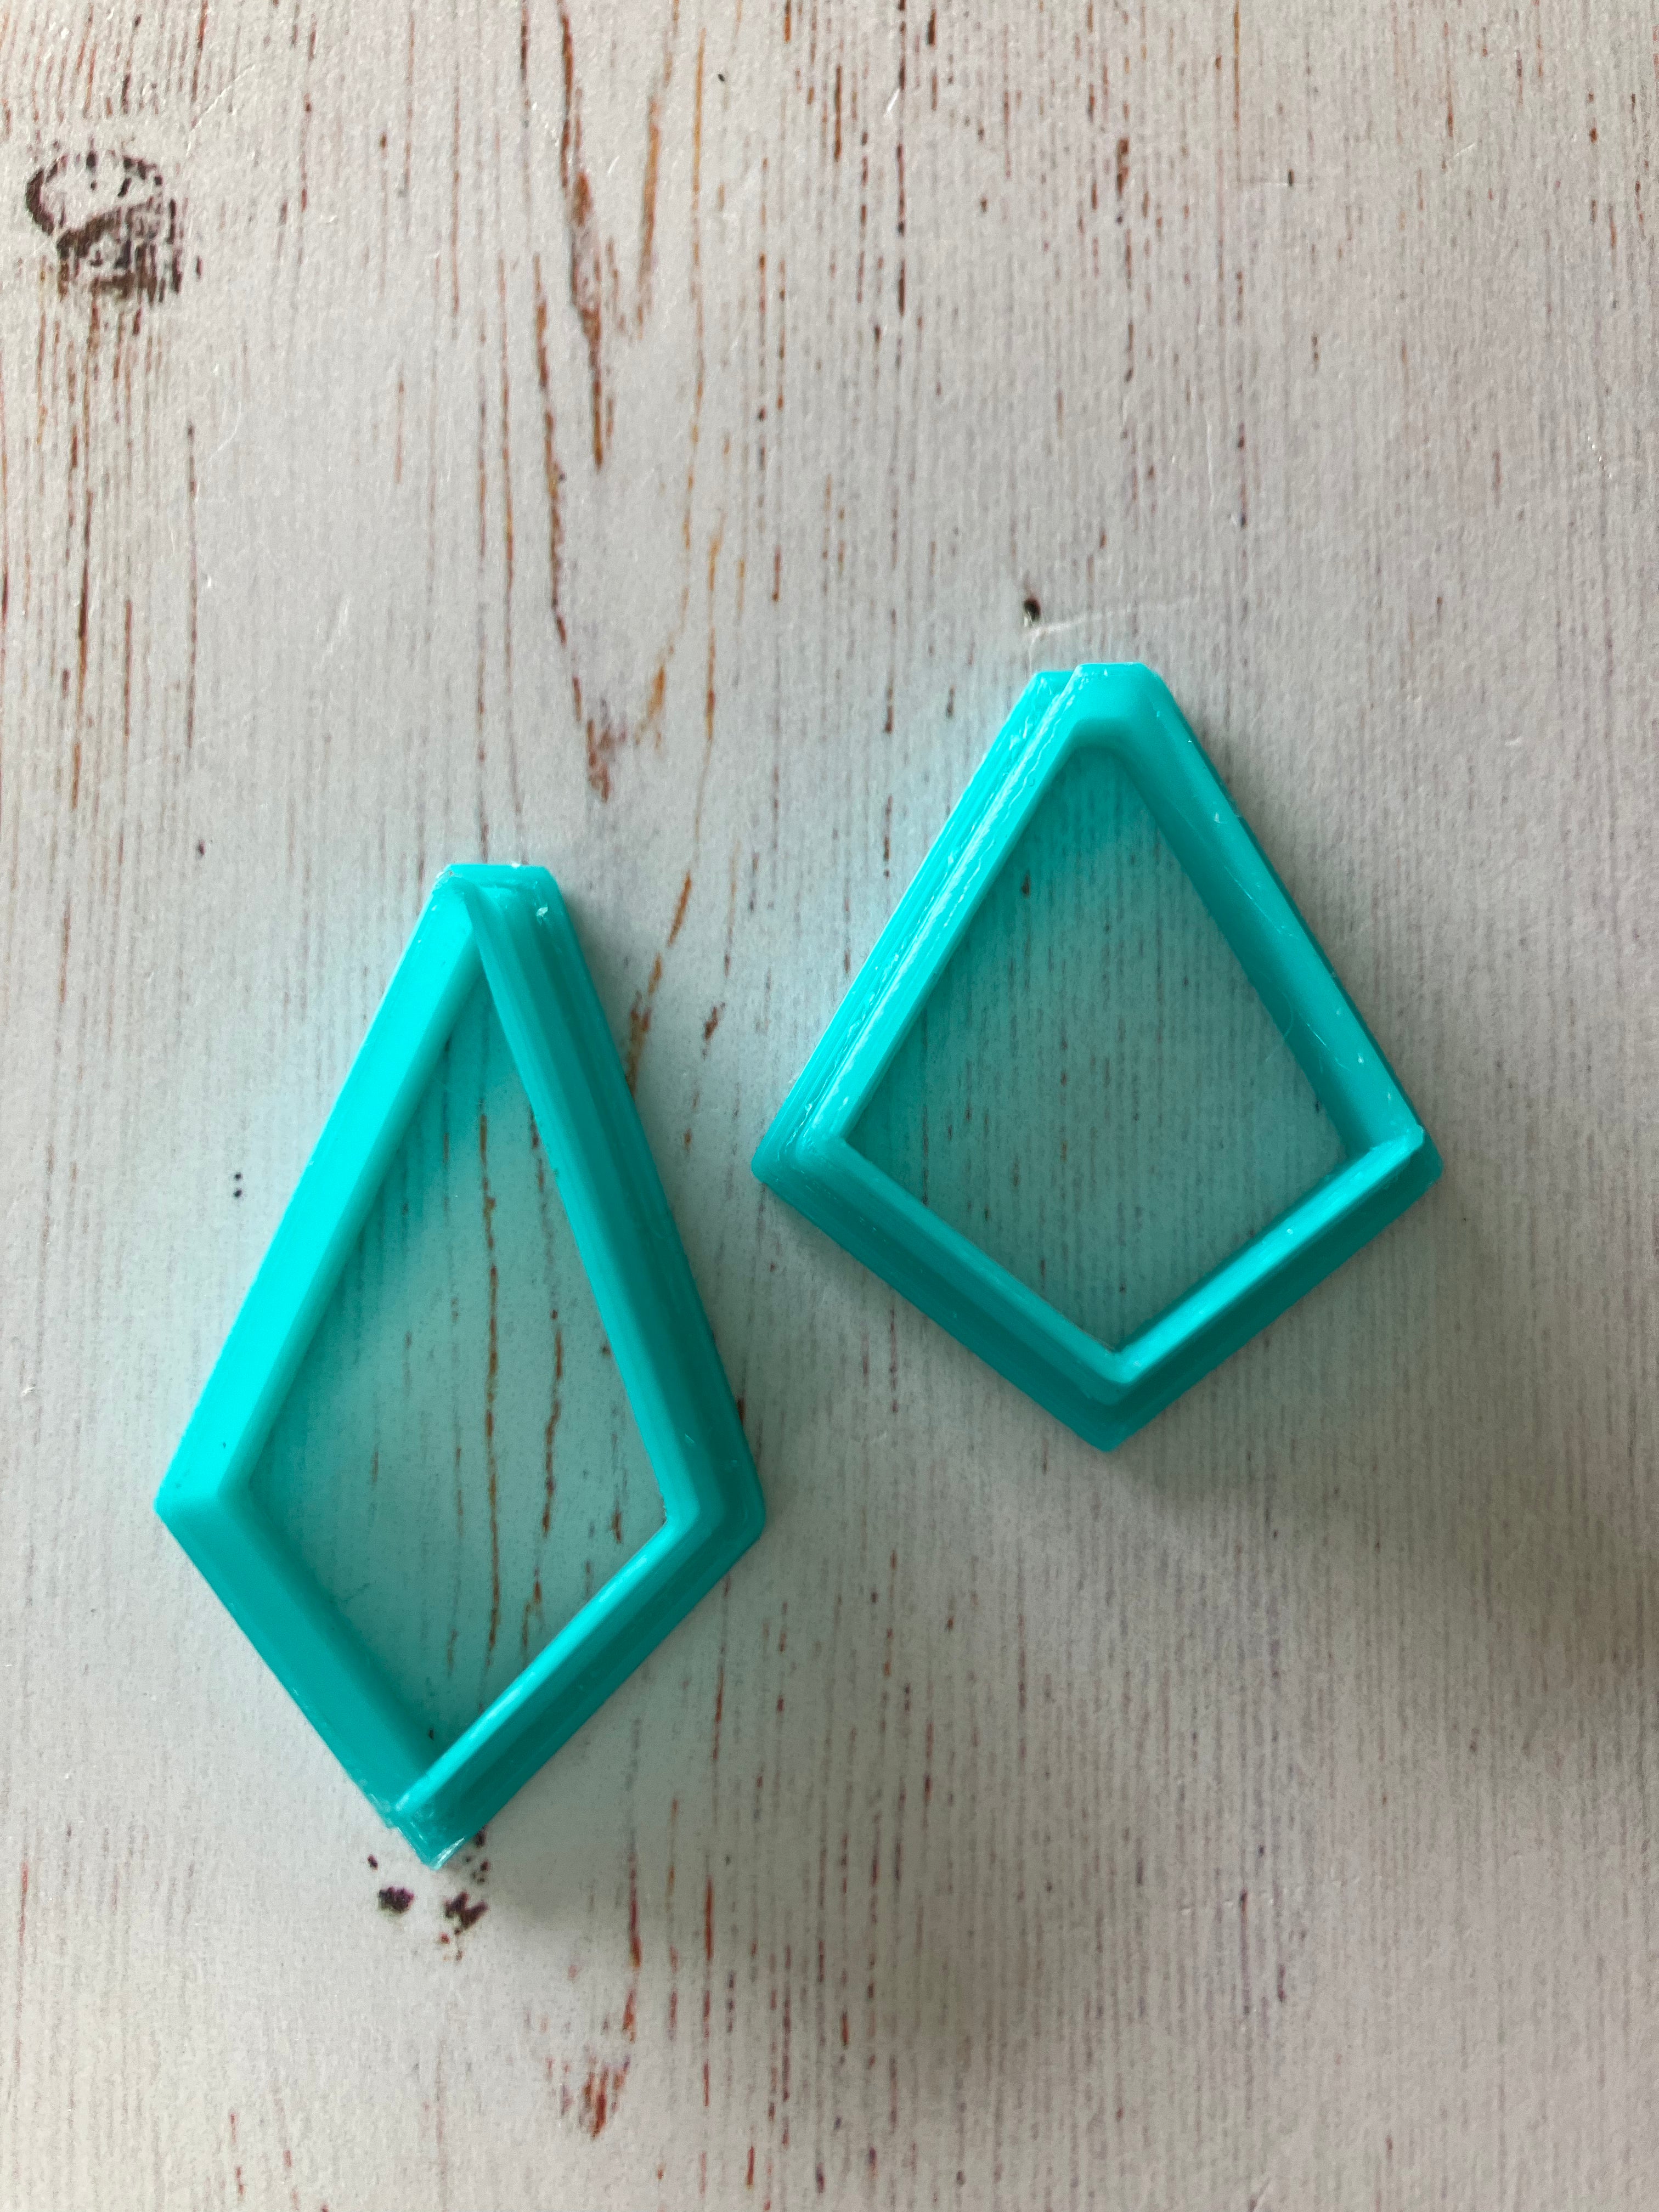 3D Gizmo's -  Diamond Cutters (2 Cutters)